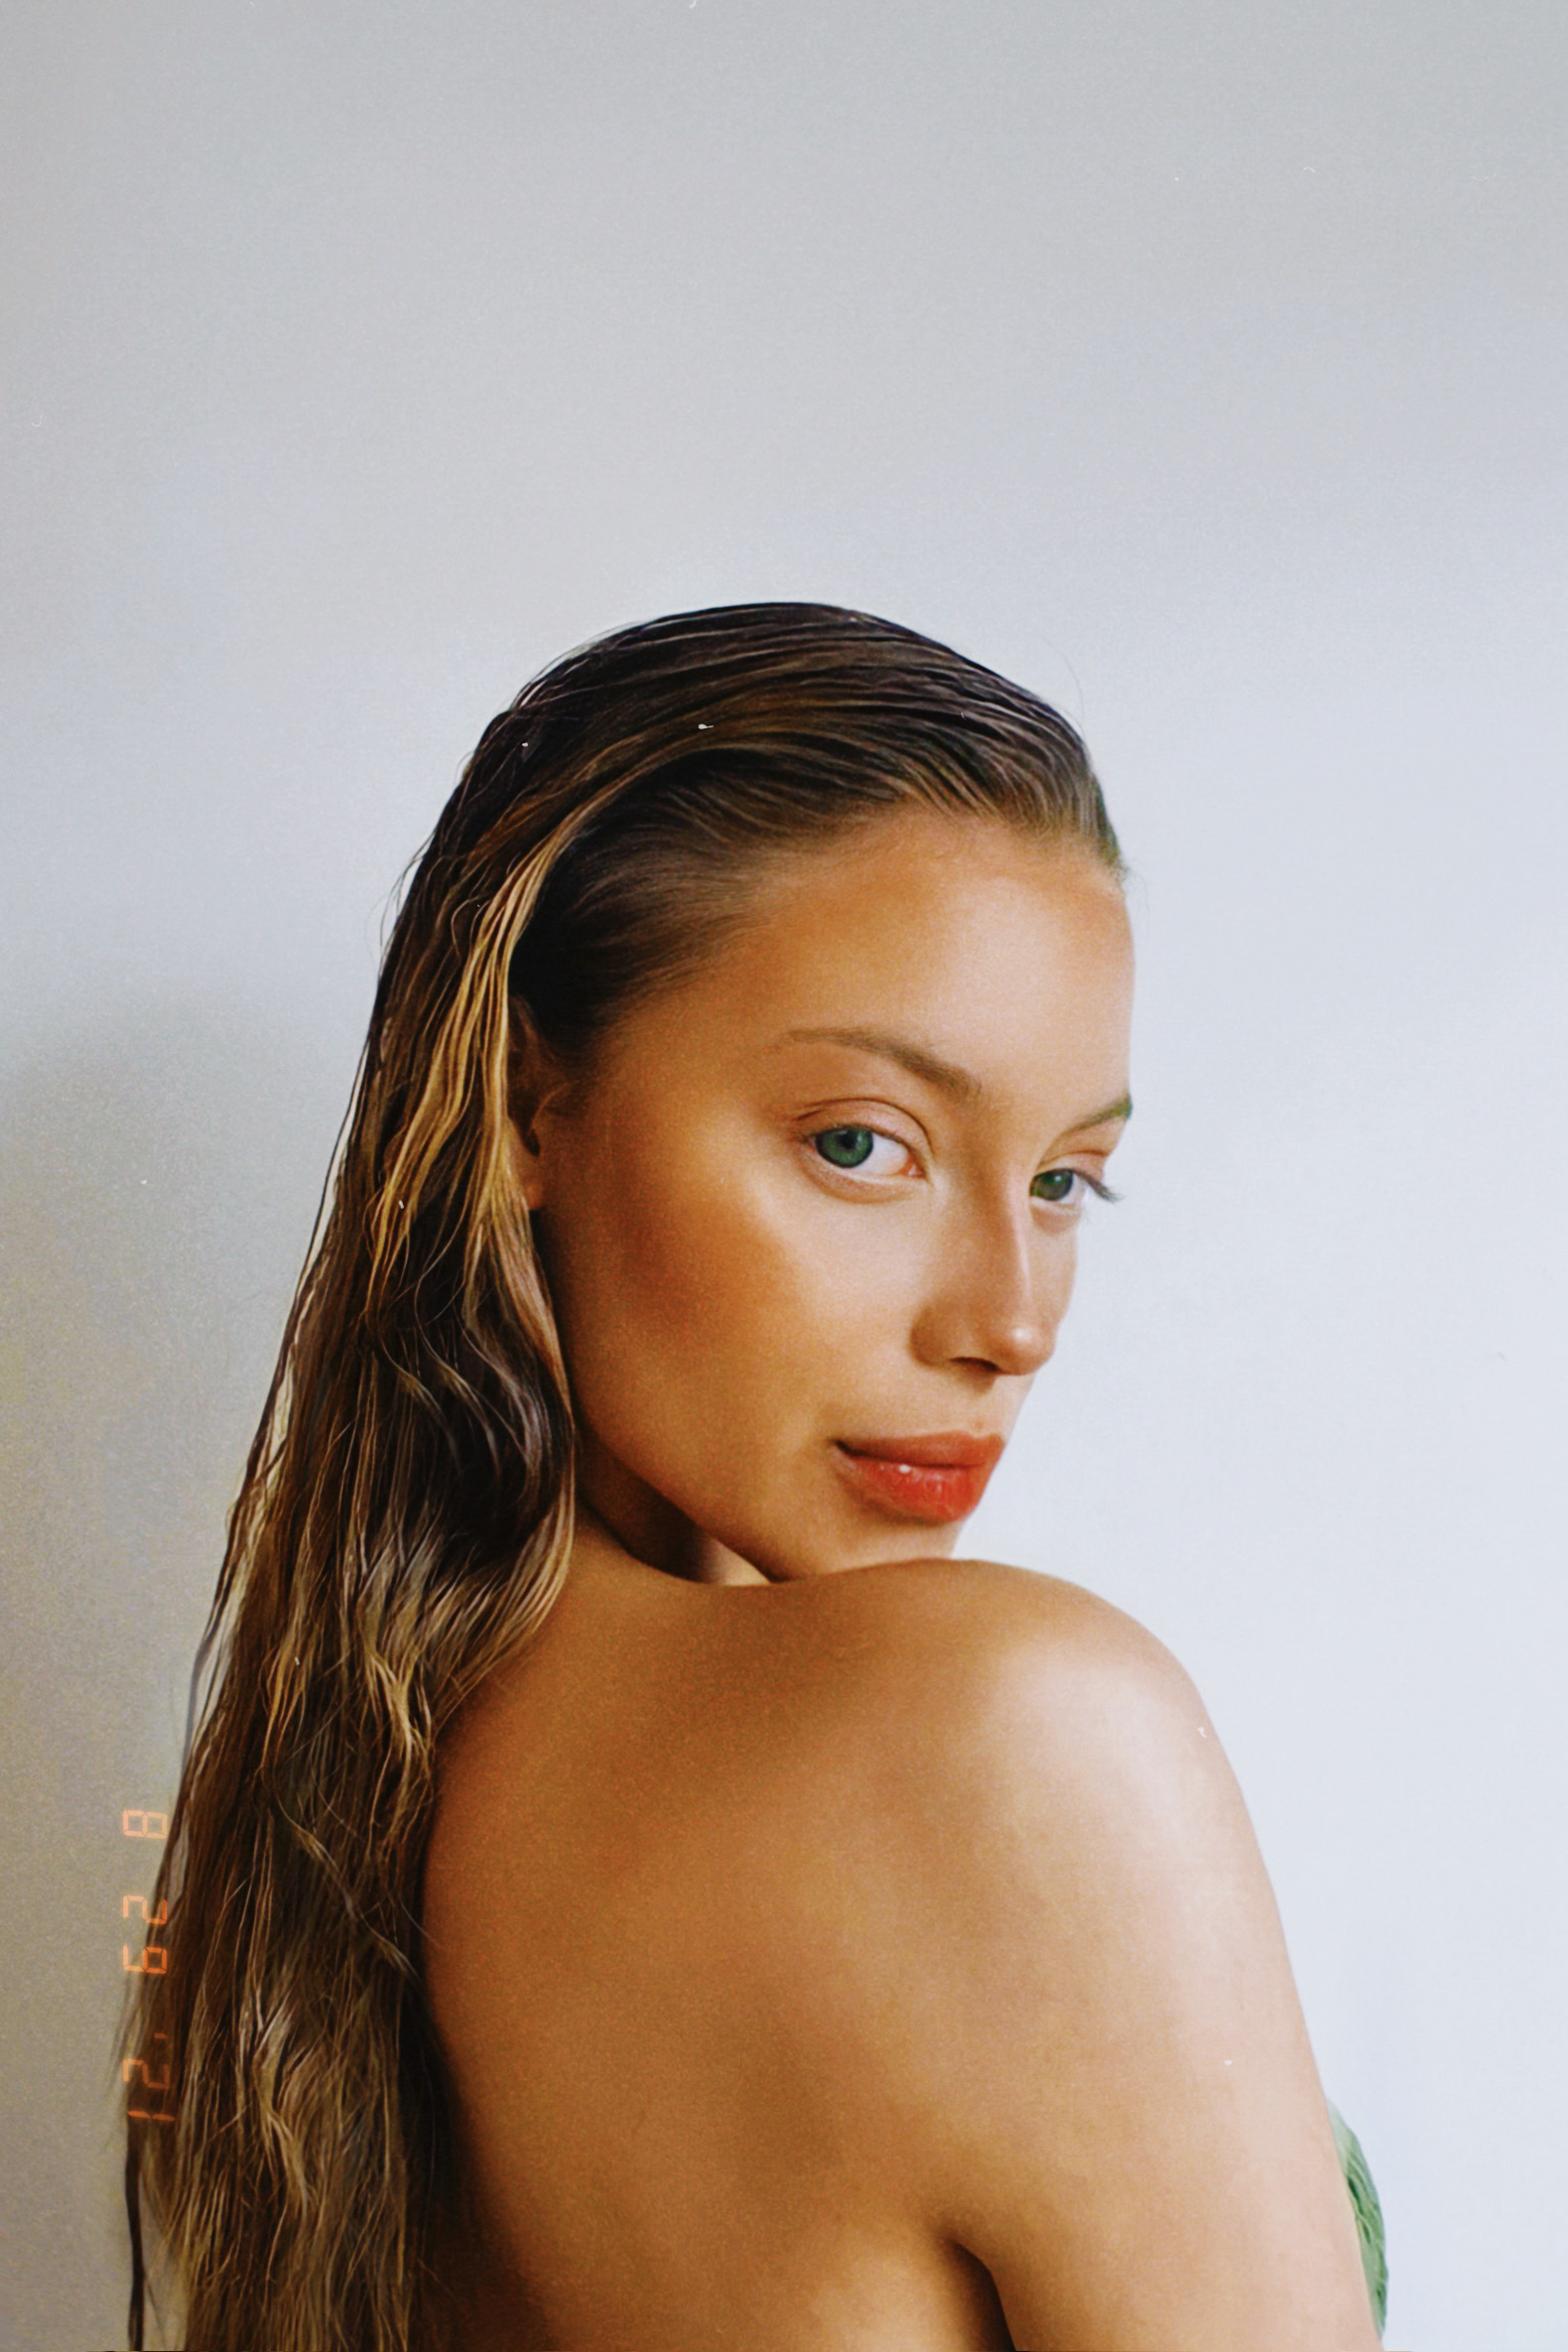 A partir da maquiagem, a estudante Luma Barros ampliou a estética “clean girl” para o modo de se vestir